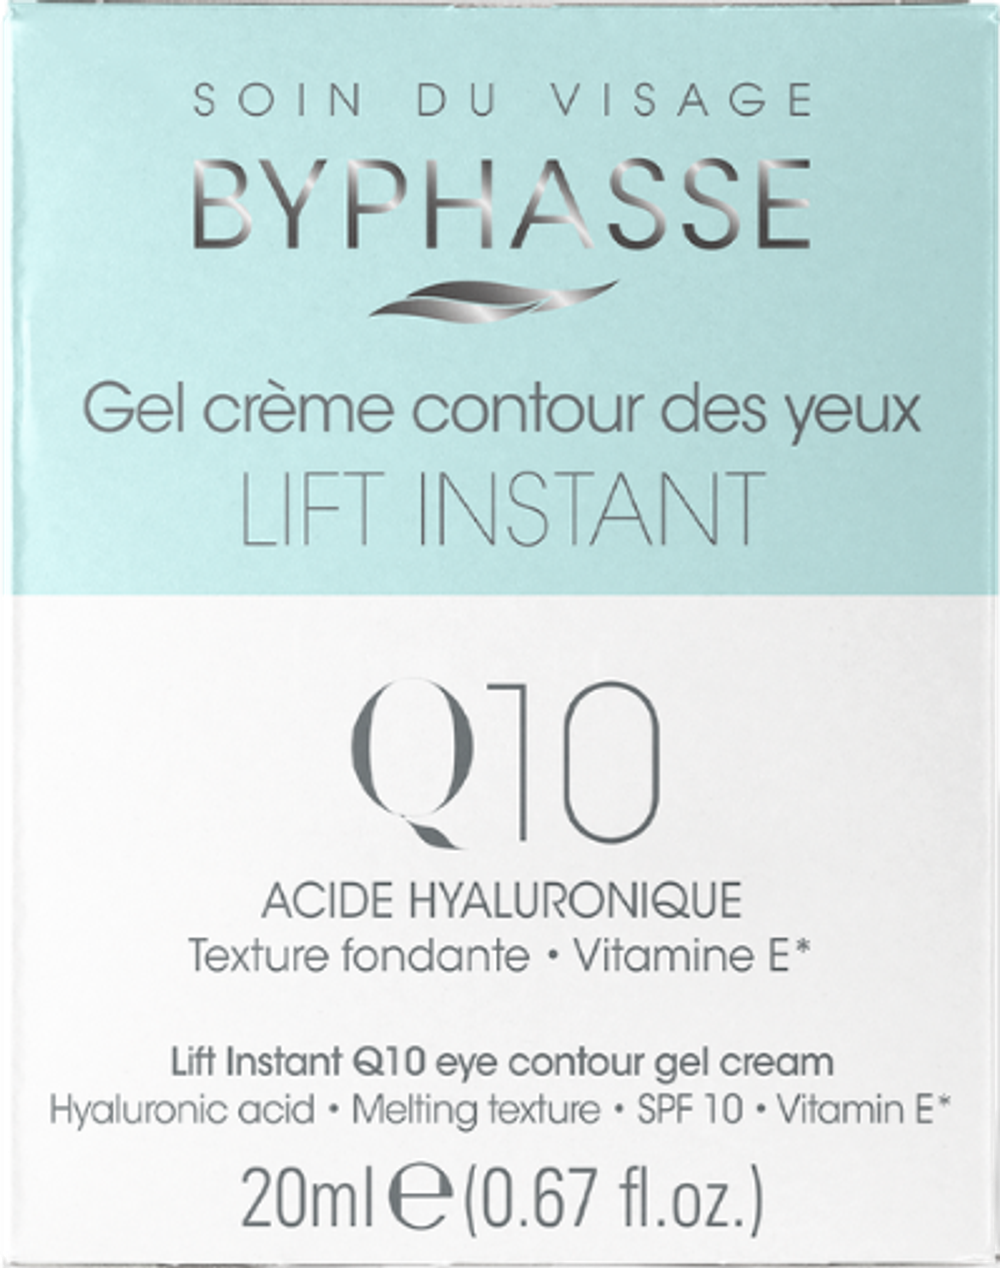 Tilbud på Lift Instant Q10 Cream (20ml) (ByPhasse) fra Basic & More til 30 kr.